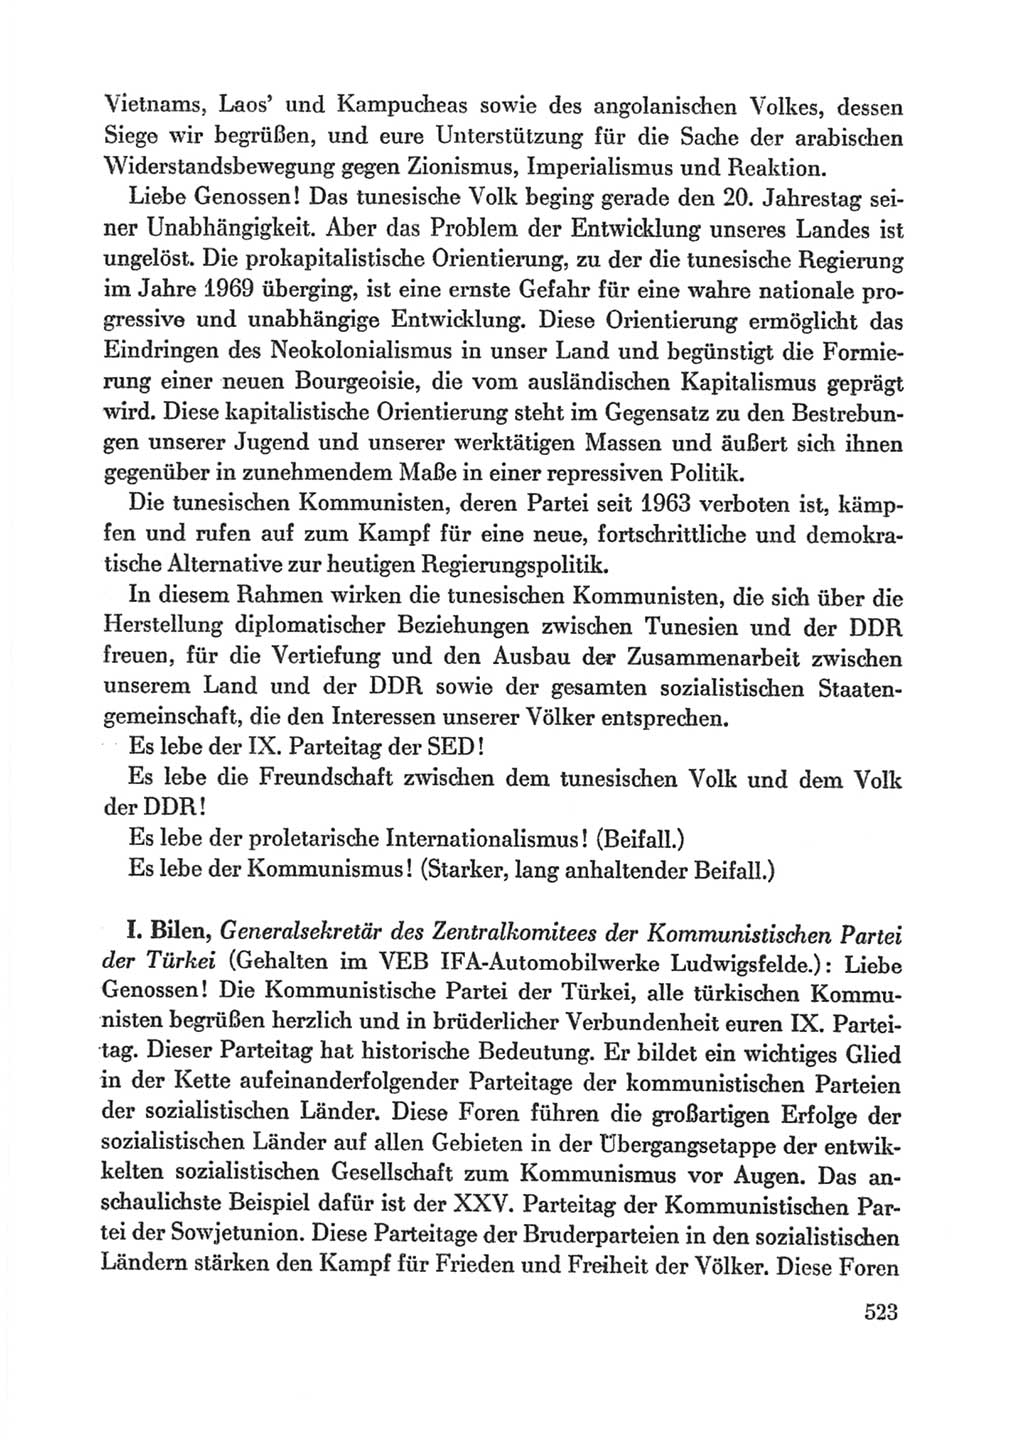 Protokoll der Verhandlungen des Ⅸ. Parteitages der Sozialistischen Einheitspartei Deutschlands (SED) [Deutsche Demokratische Republik (DDR)] 1976, Band 1, Seite 523 (Prot. Verh. Ⅸ. PT SED DDR 1976, Bd. 1, S. 523)